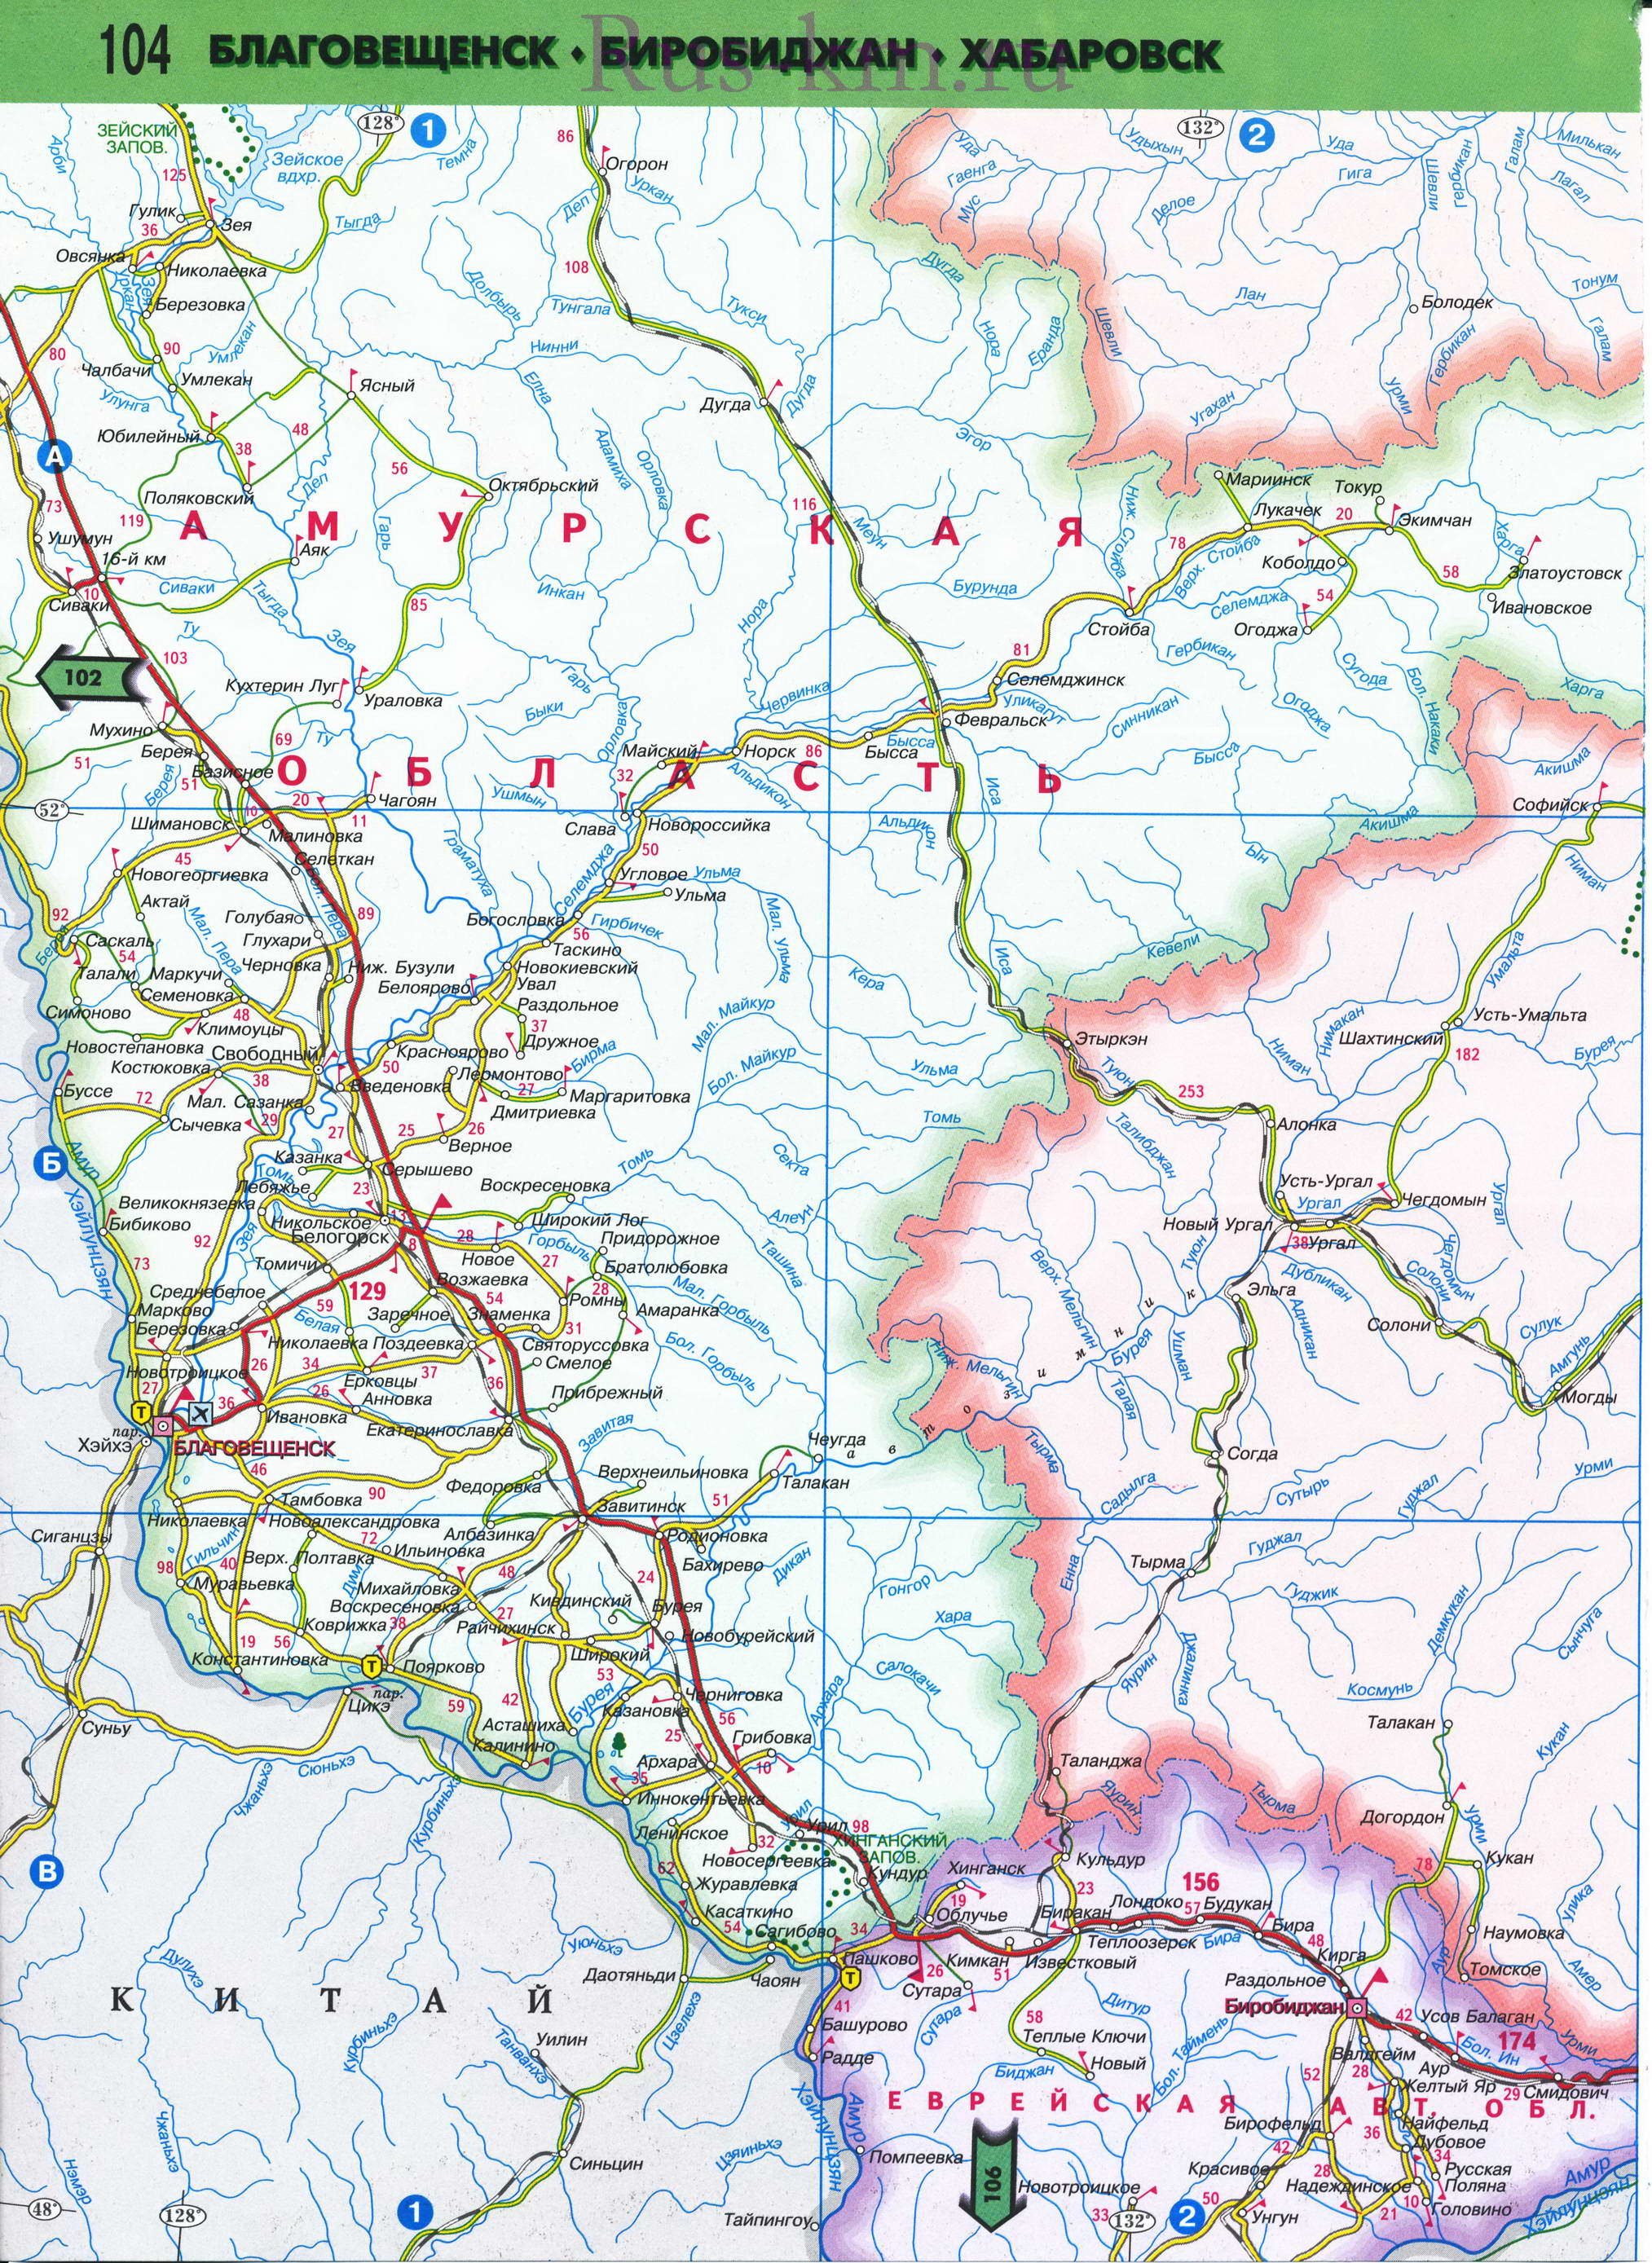 Карта Восточной Сибири автомобильная. Подробная карта автомобильных дорог Восточной Сибири из атласа России 2011 года, D2 - 